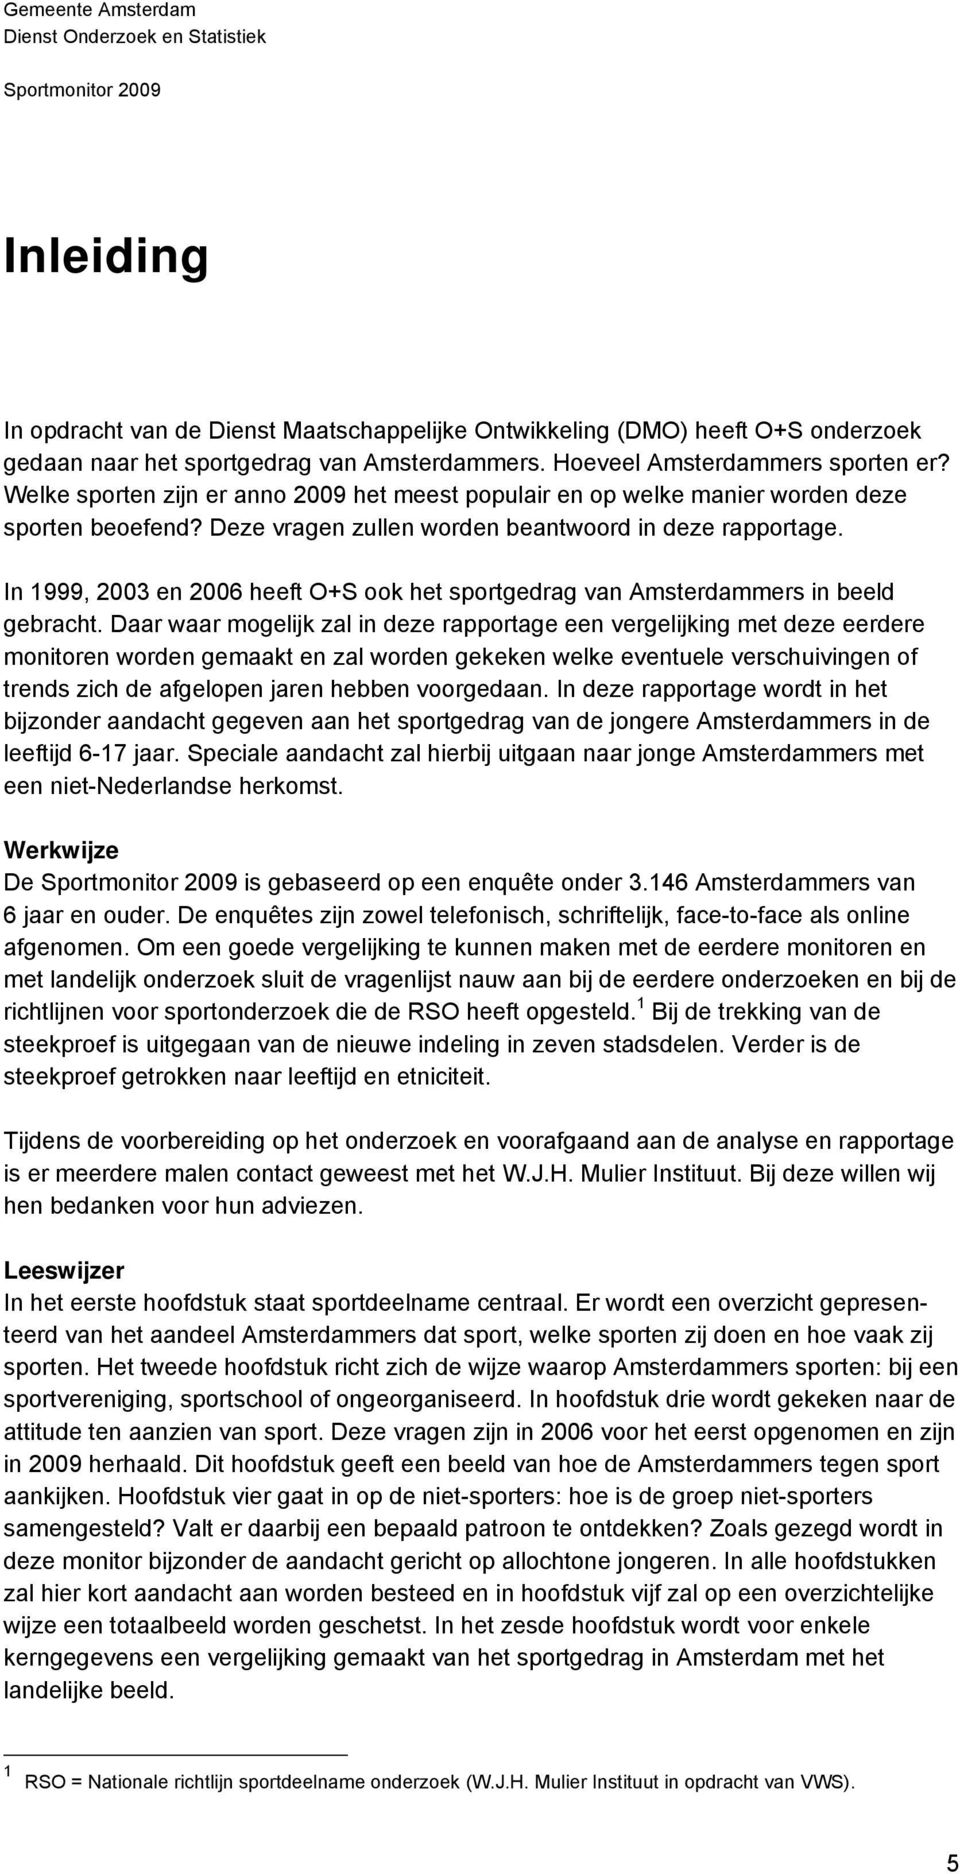 In 1999, 2003 en 2006 heeft O+S ook het sportgedrag van Amsterdammers in beeld gebracht.